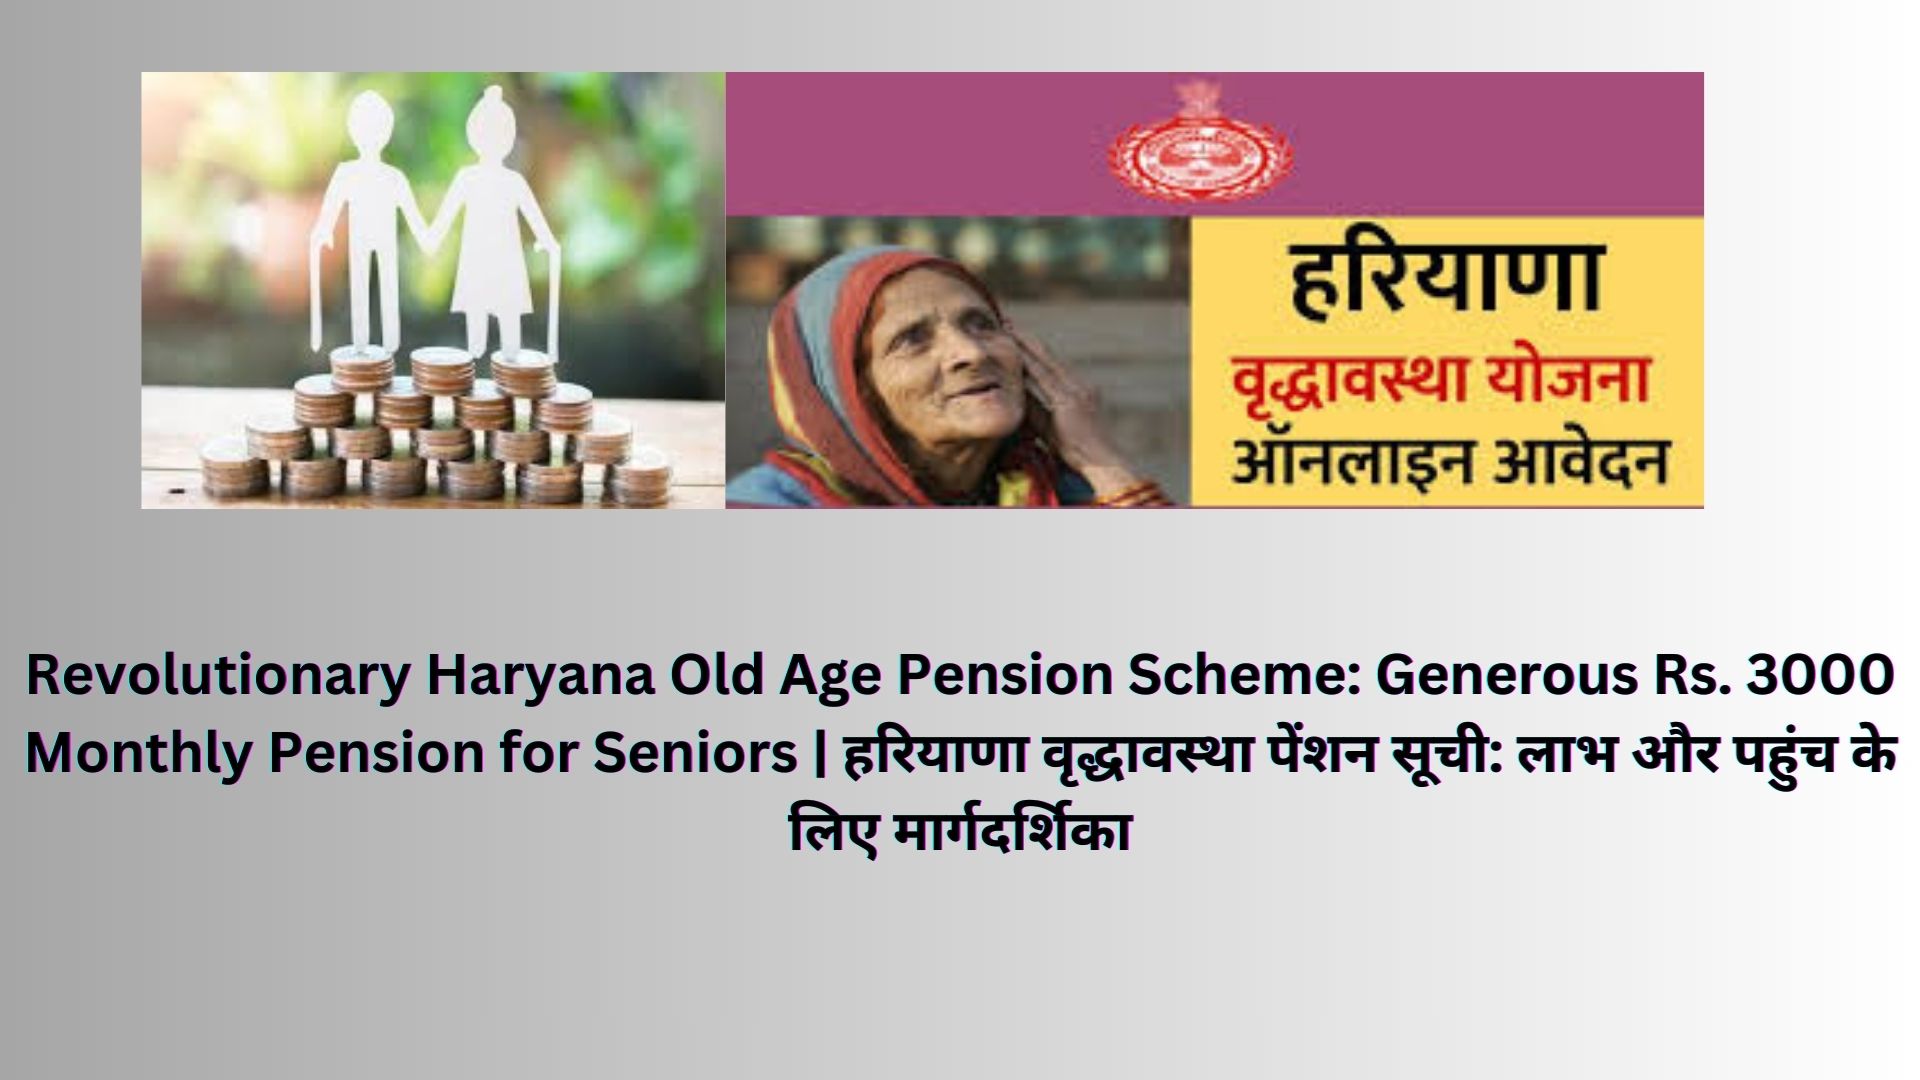 Revolutionary Haryana Old Age Pension Scheme: Generous Rs. 3000 Monthly Pension for Seniors | हरियाणा वृद्धावस्था पेंशन सूची: लाभ और पहुंच के लिए मार्गदर्शिका